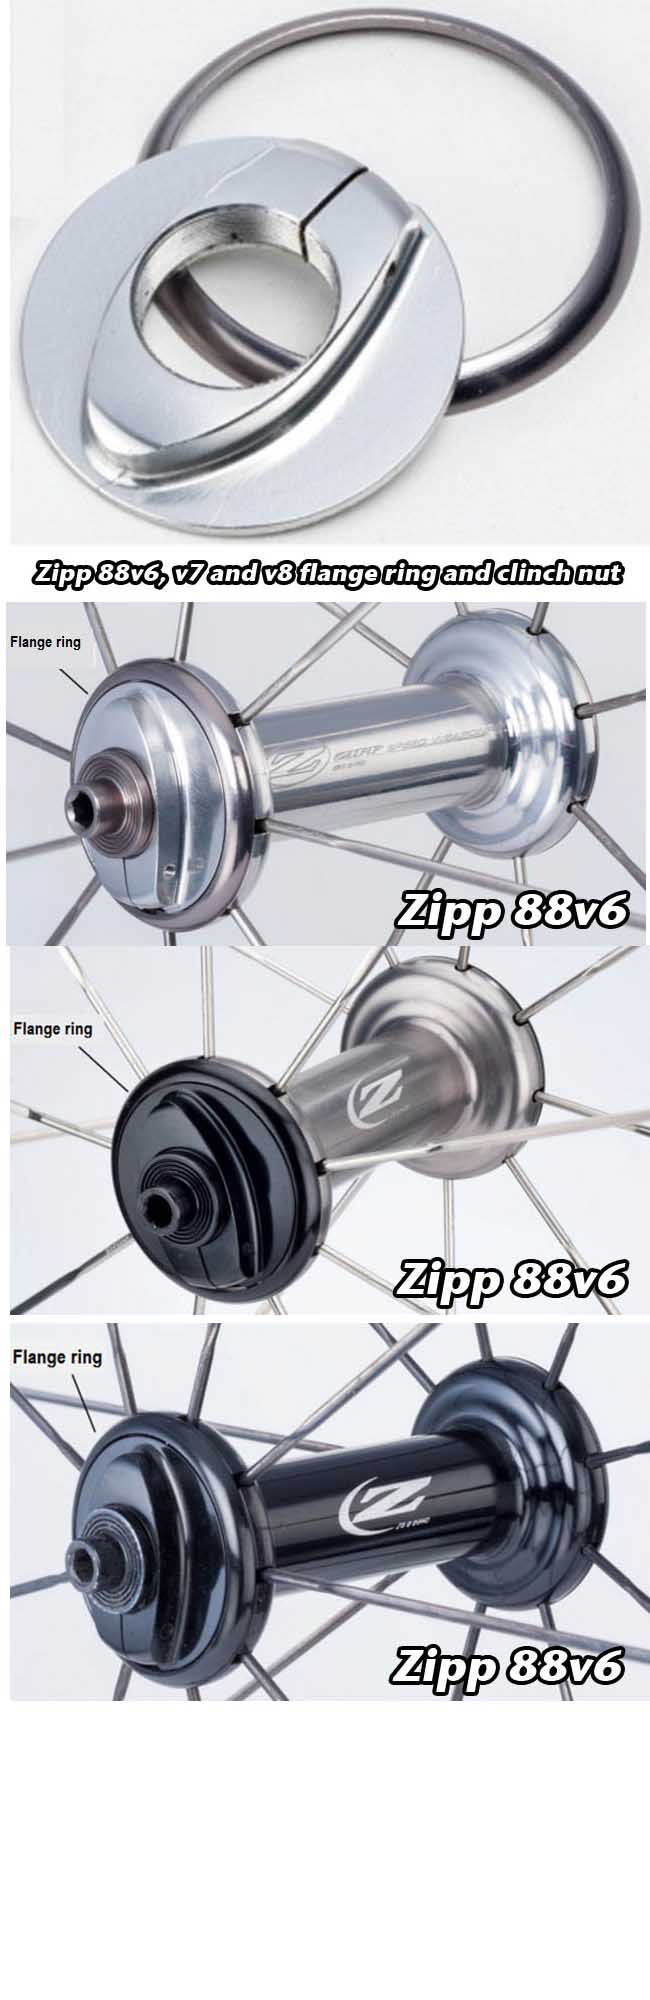 Zipp Front Wheel Hubs